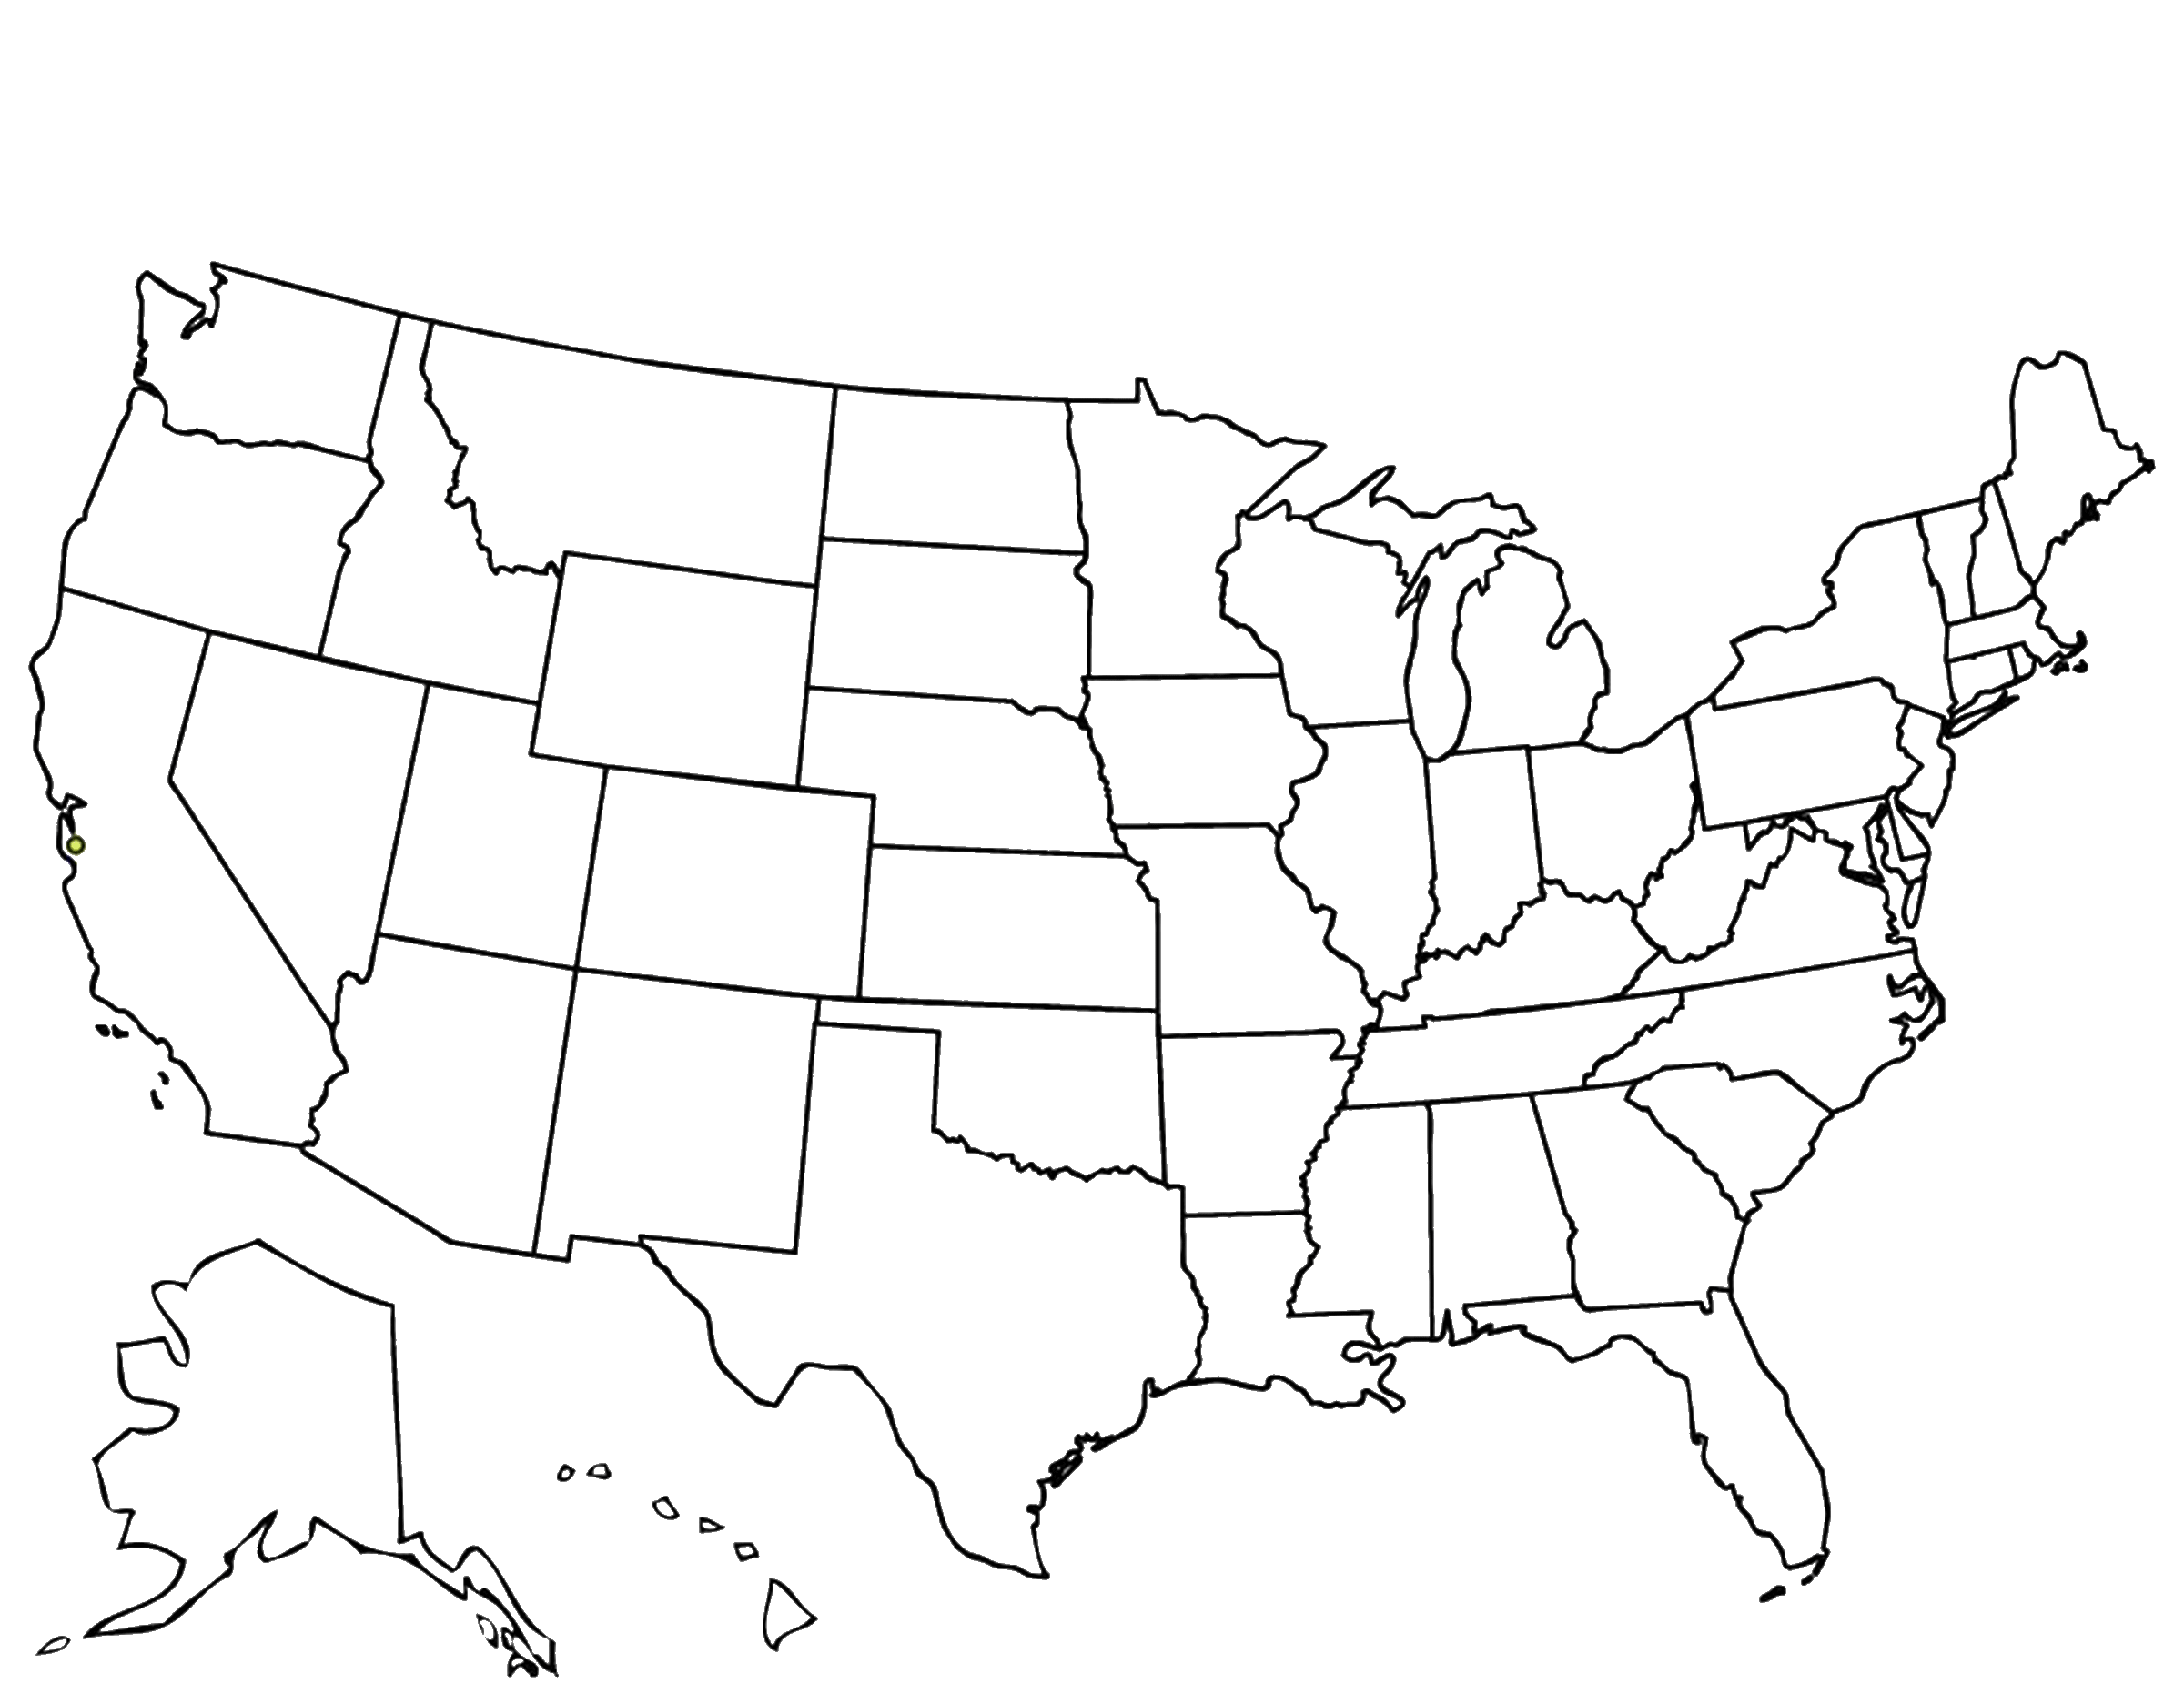 Y state. Контурная карта Северной Америки со Штатами. Контурная карта Штатов США. Карта США со Штатами. Карта Америки со Штатами.